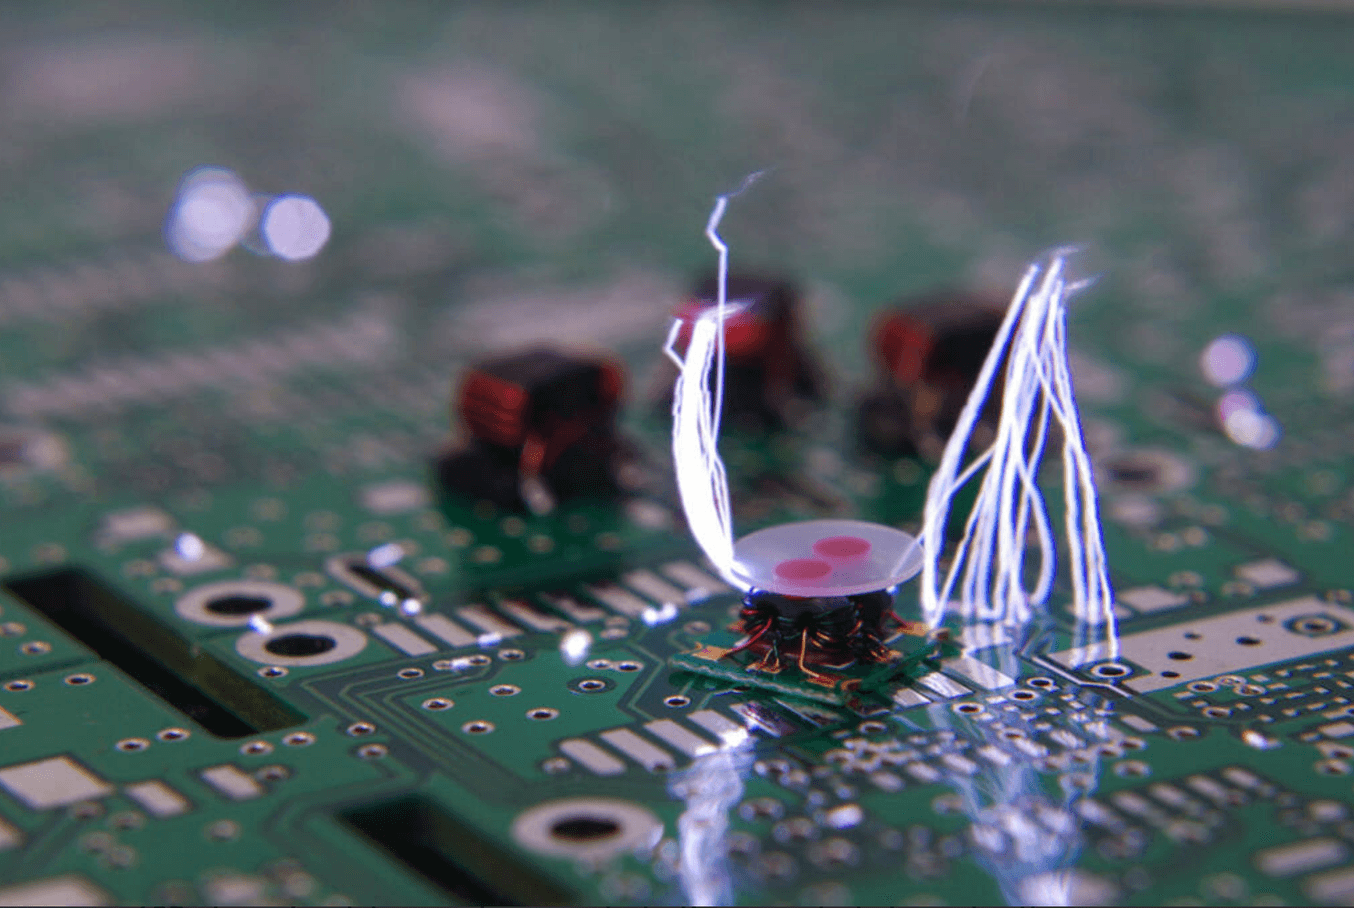 Choques electrostáticos destruyendo una placa de circuito.